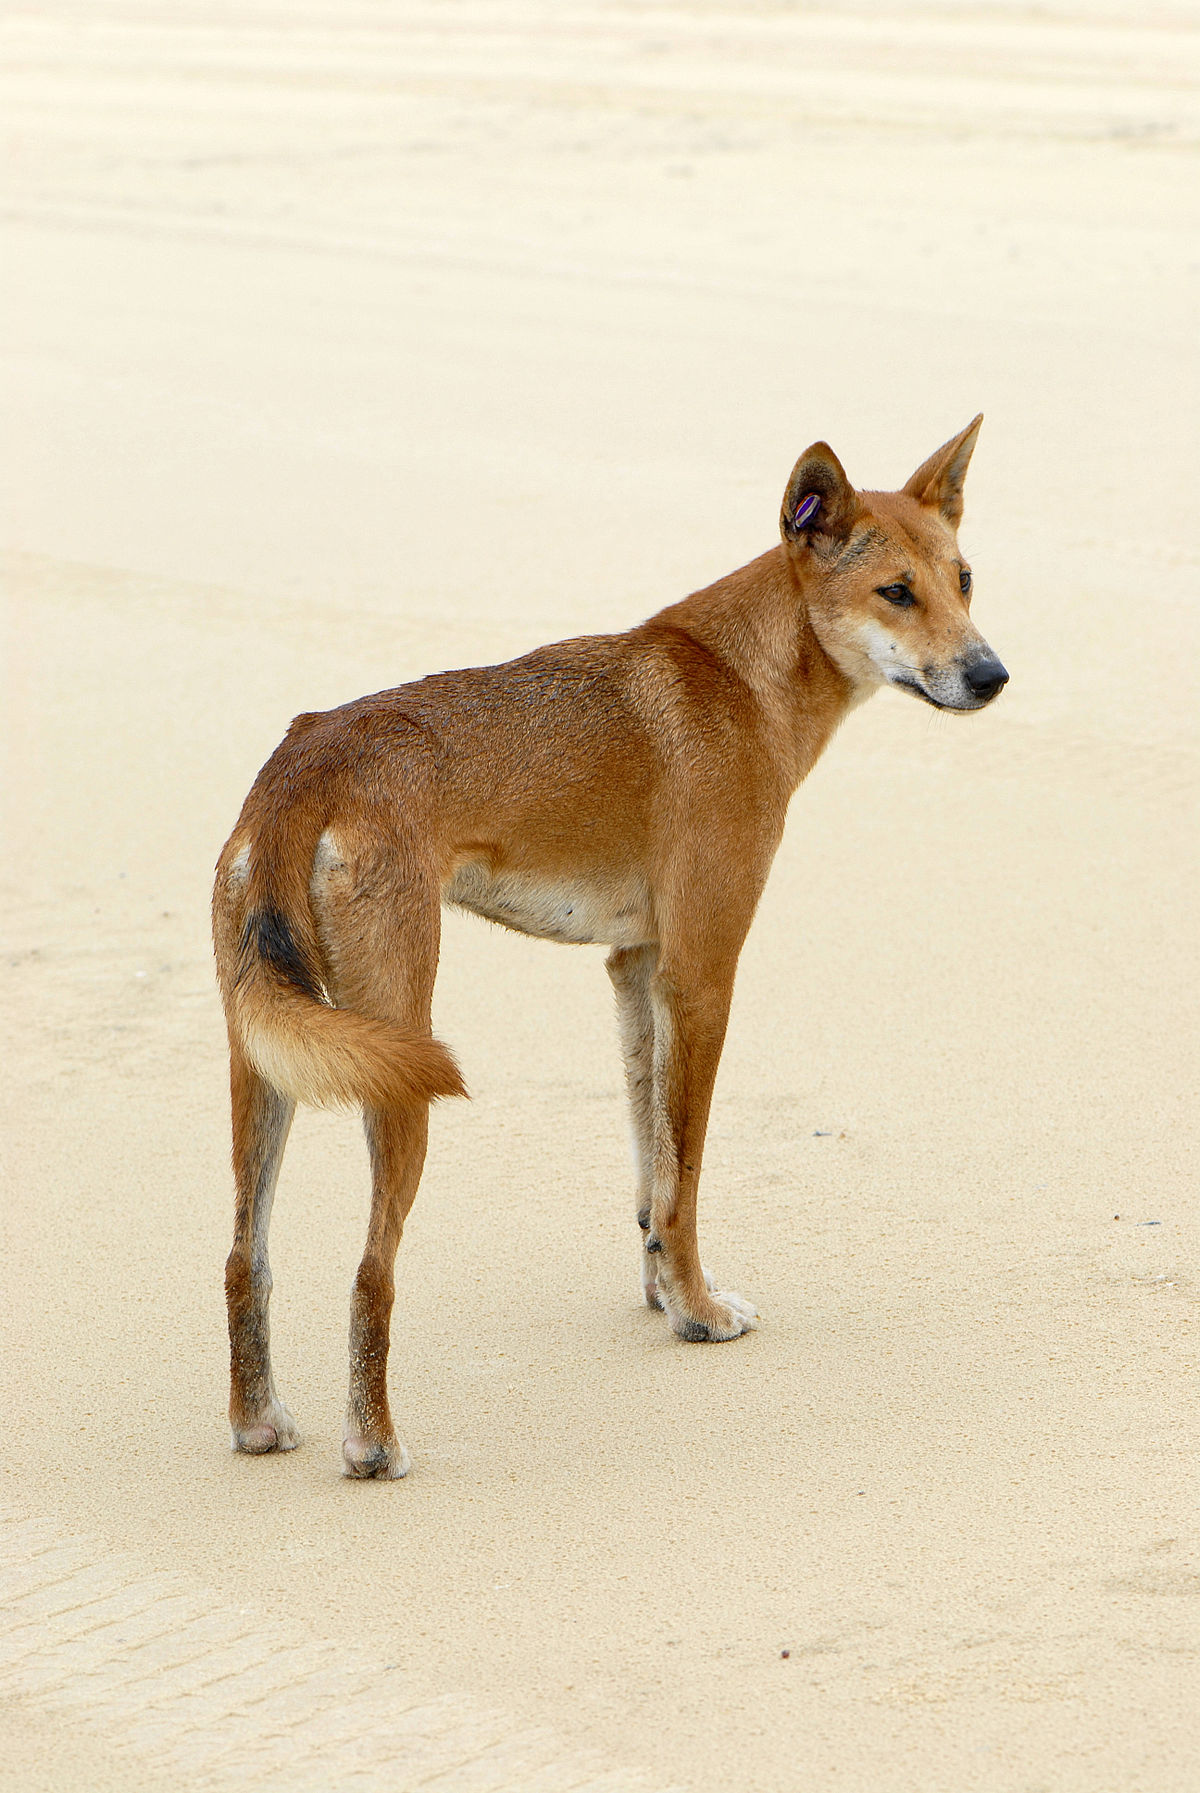 Canis lupus dingo, hay còn được gọi là chó hoang dingo, là loài động vật hoang dã đặc trưng của Úc. Hãy xem những hình ảnh đẹp về Canis lupus dingo, để tìm hiểu thêm về loài động vật rất đặc biệt này.